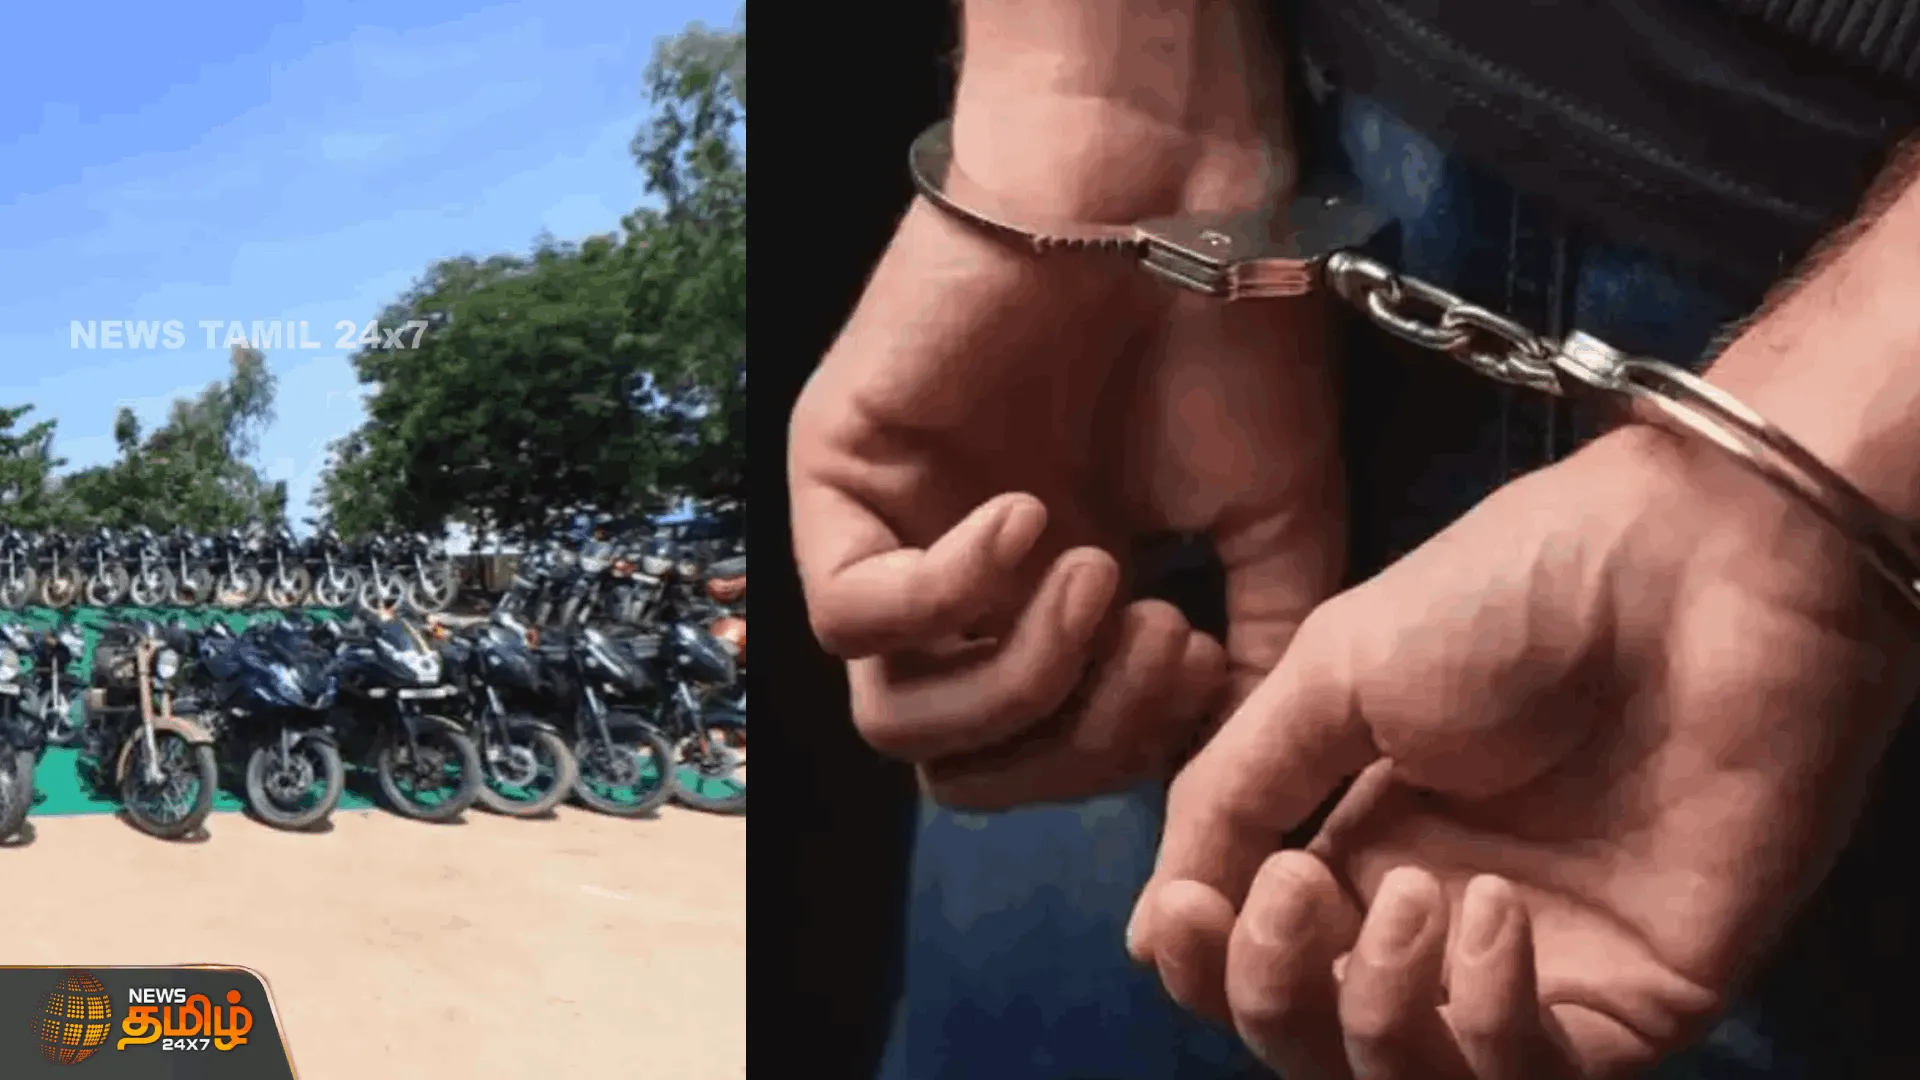 பைக் திருட்டில் ஈடுபட்டவர் கைது  ஸ்மார்ட் கீ என்ற ஒற்றை சாவி மூலம் திருட்டு| Man involved in bike theft arrested